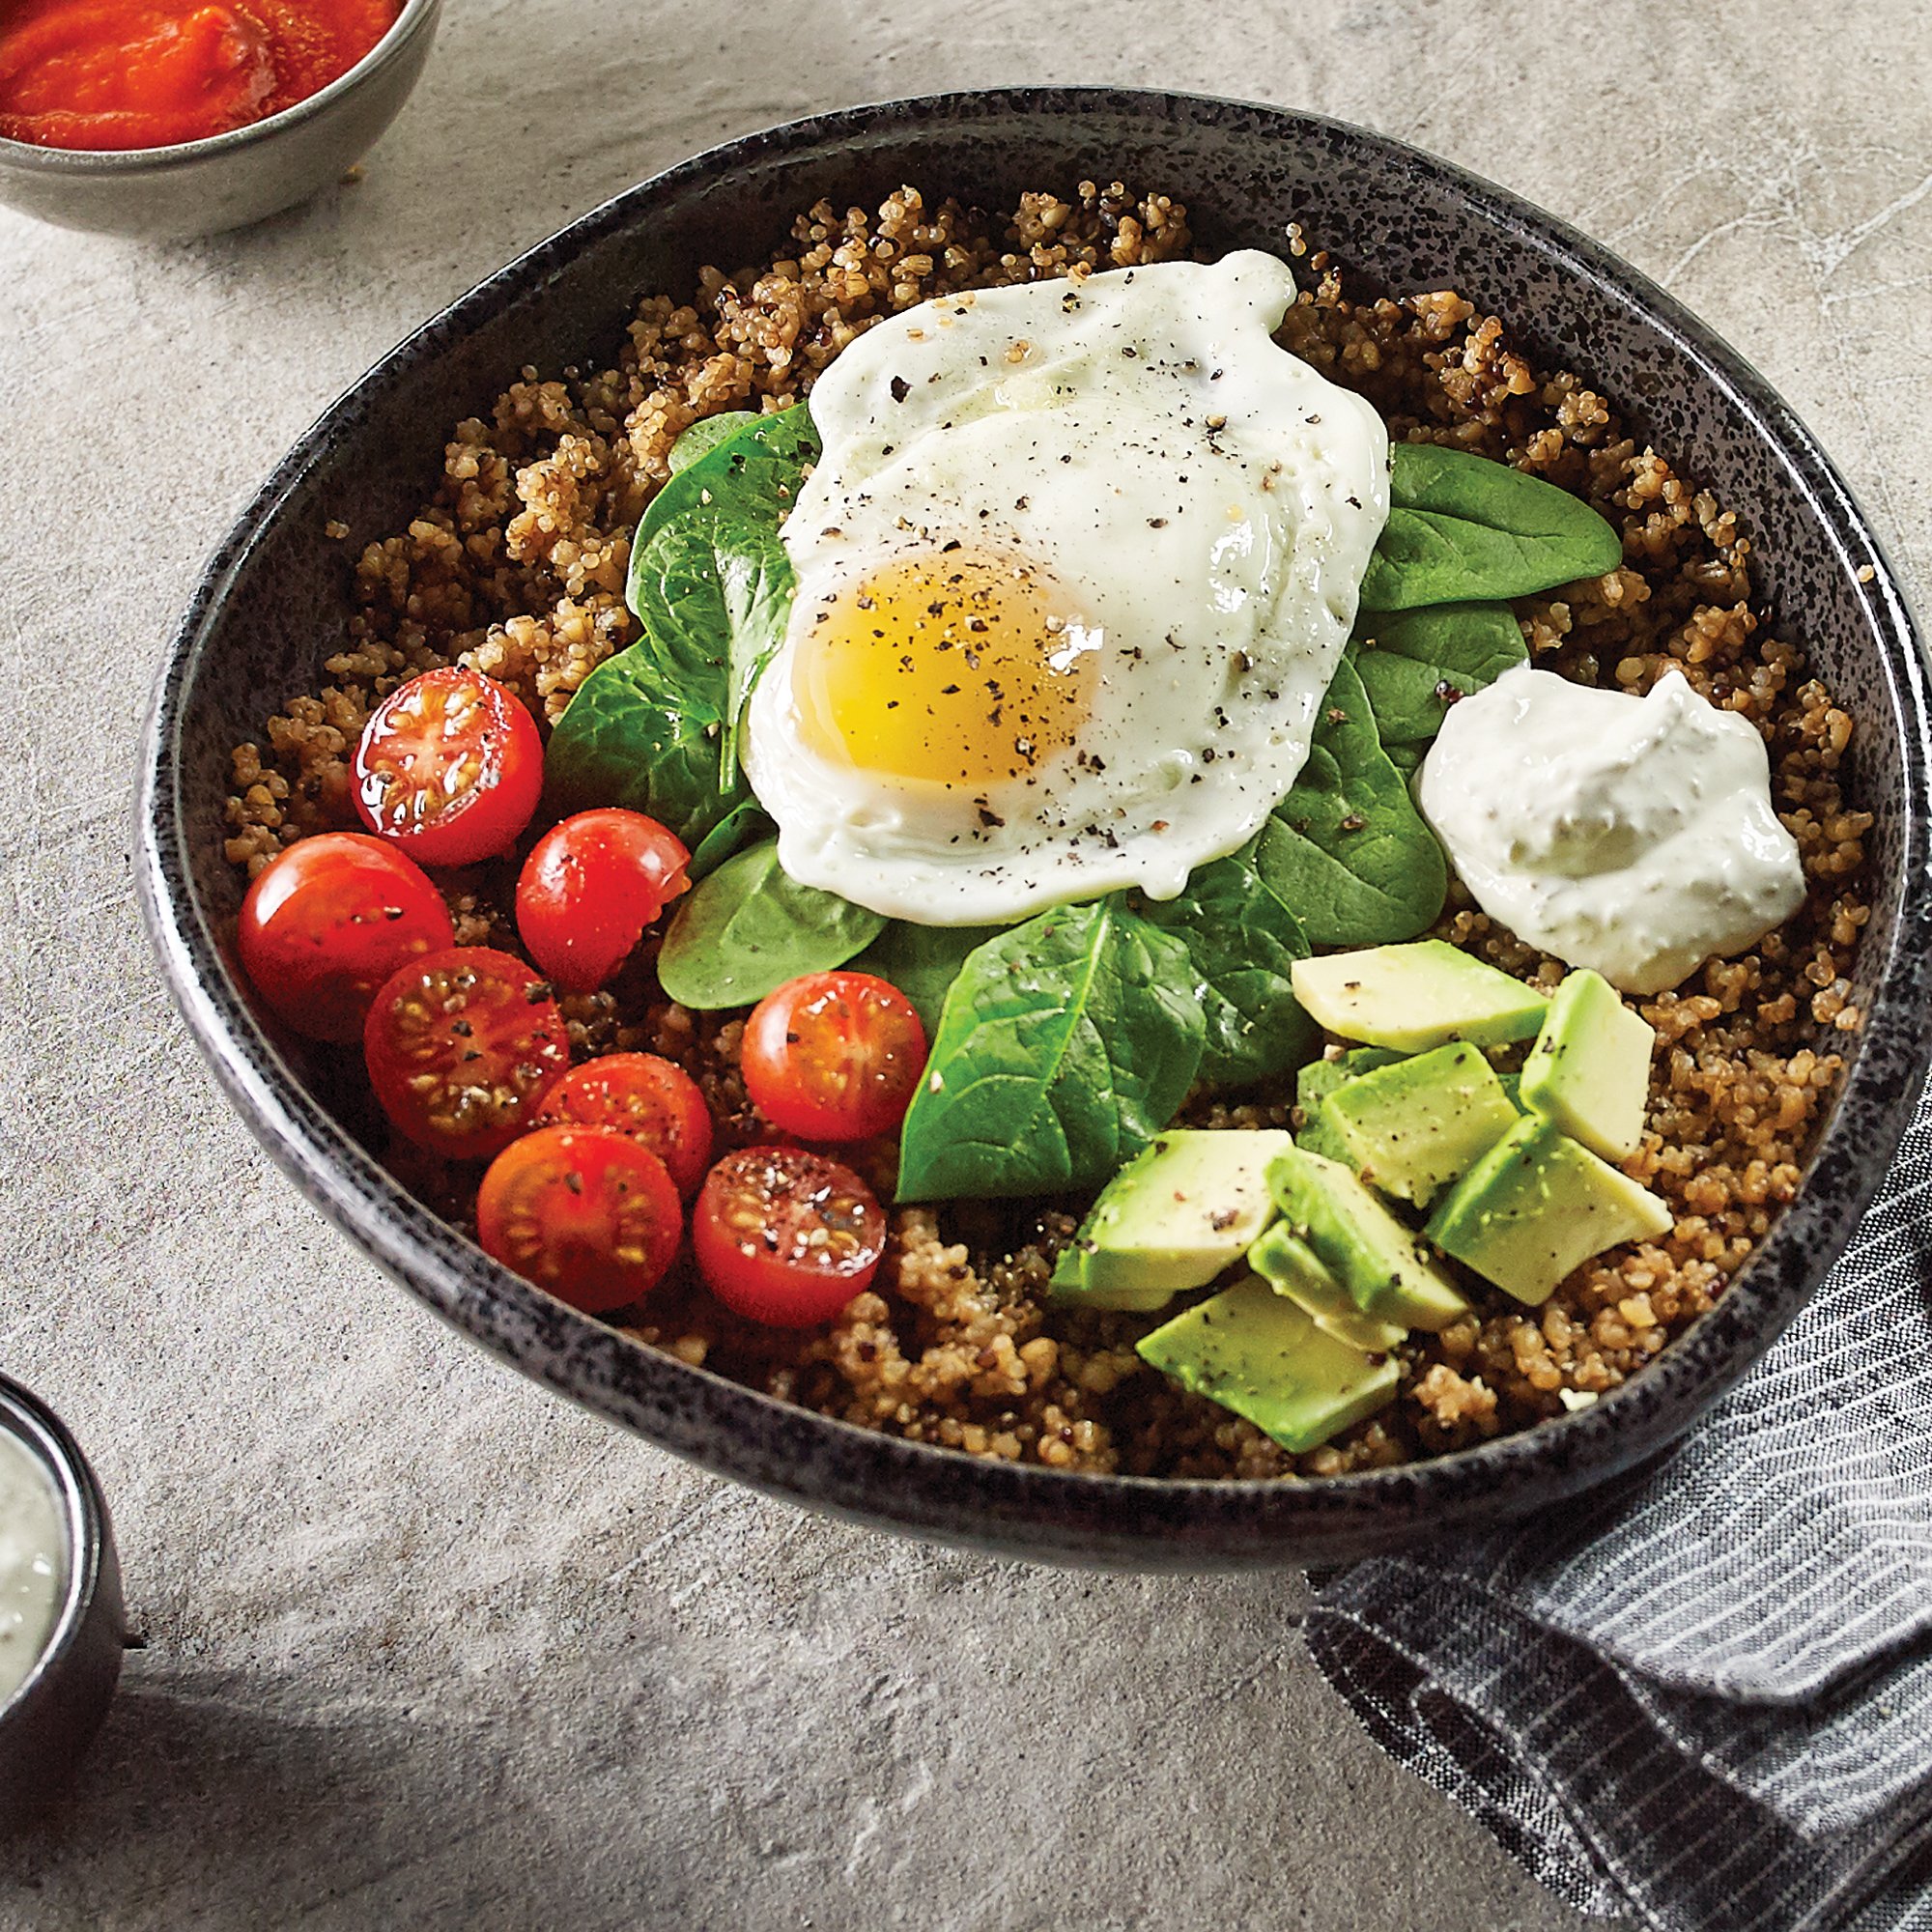 Spinach Quinoa Breakfast Bowl Recipe from H-E-B